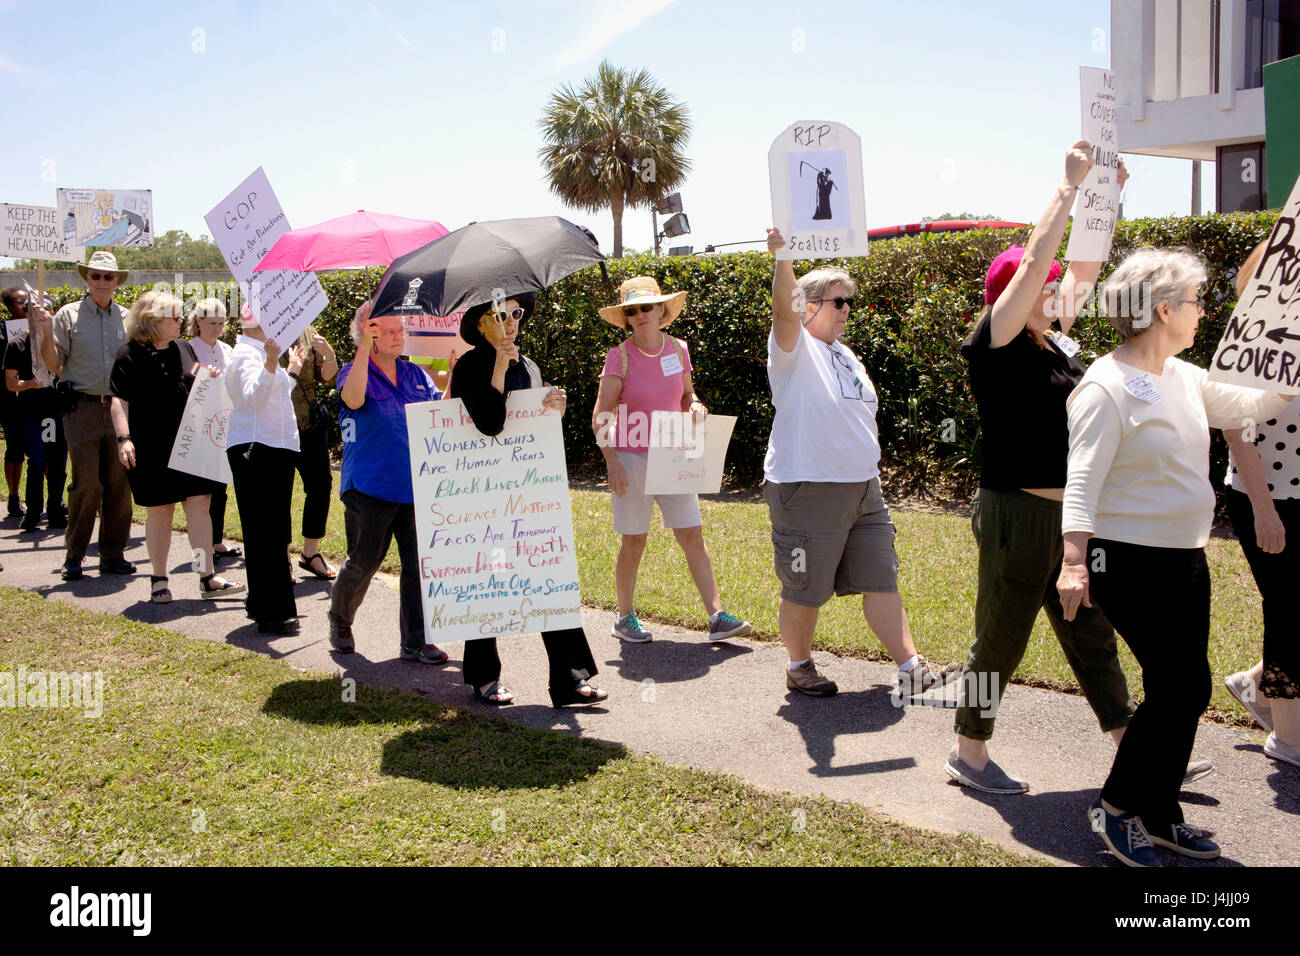 Salud manifestantes revison demostrar fuera del edificio de la oficina del representante de Louisiana en Nueva Orleans, Luisiana, Estados Unidos. El 8 de mayo de 2017. Foto de stock